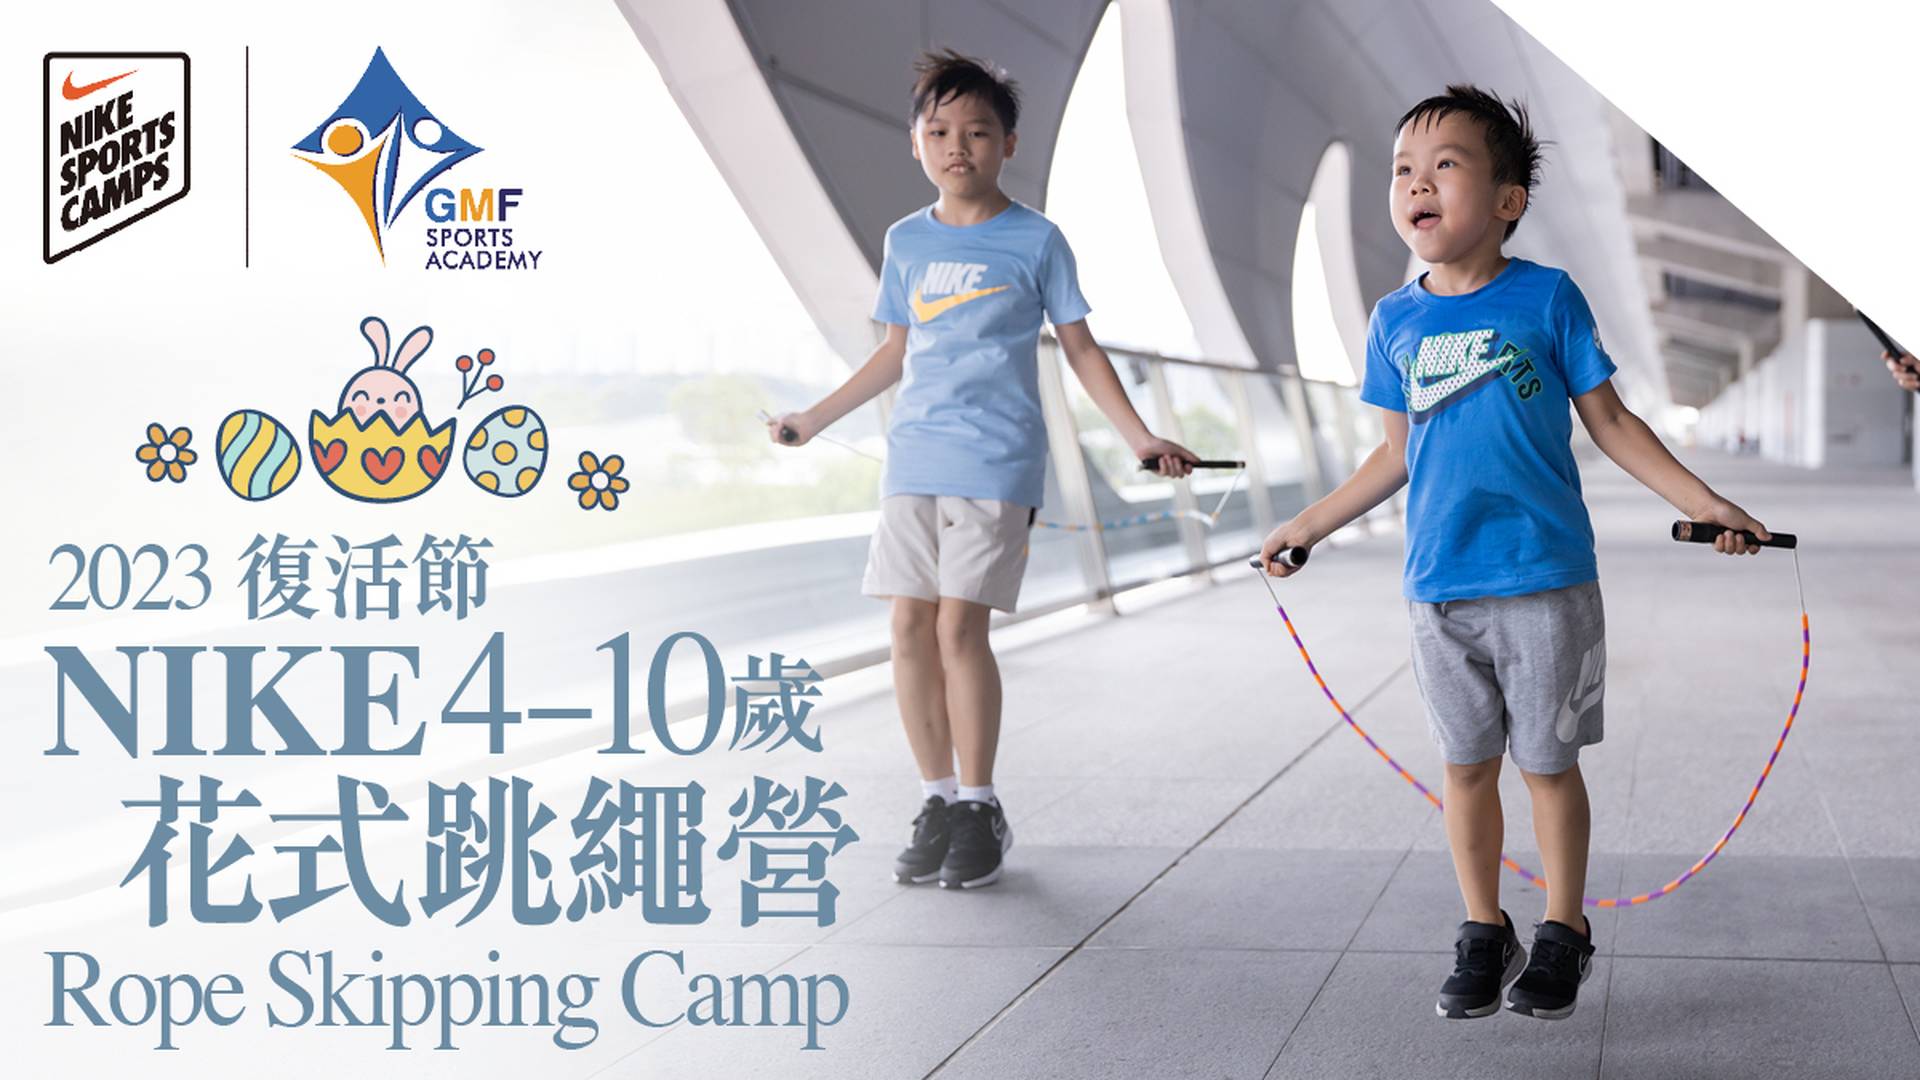 Nike Rope Skipping Camp 復活節NIKE 花式跳繩營 2023  (4-10歲)｜低至６折起